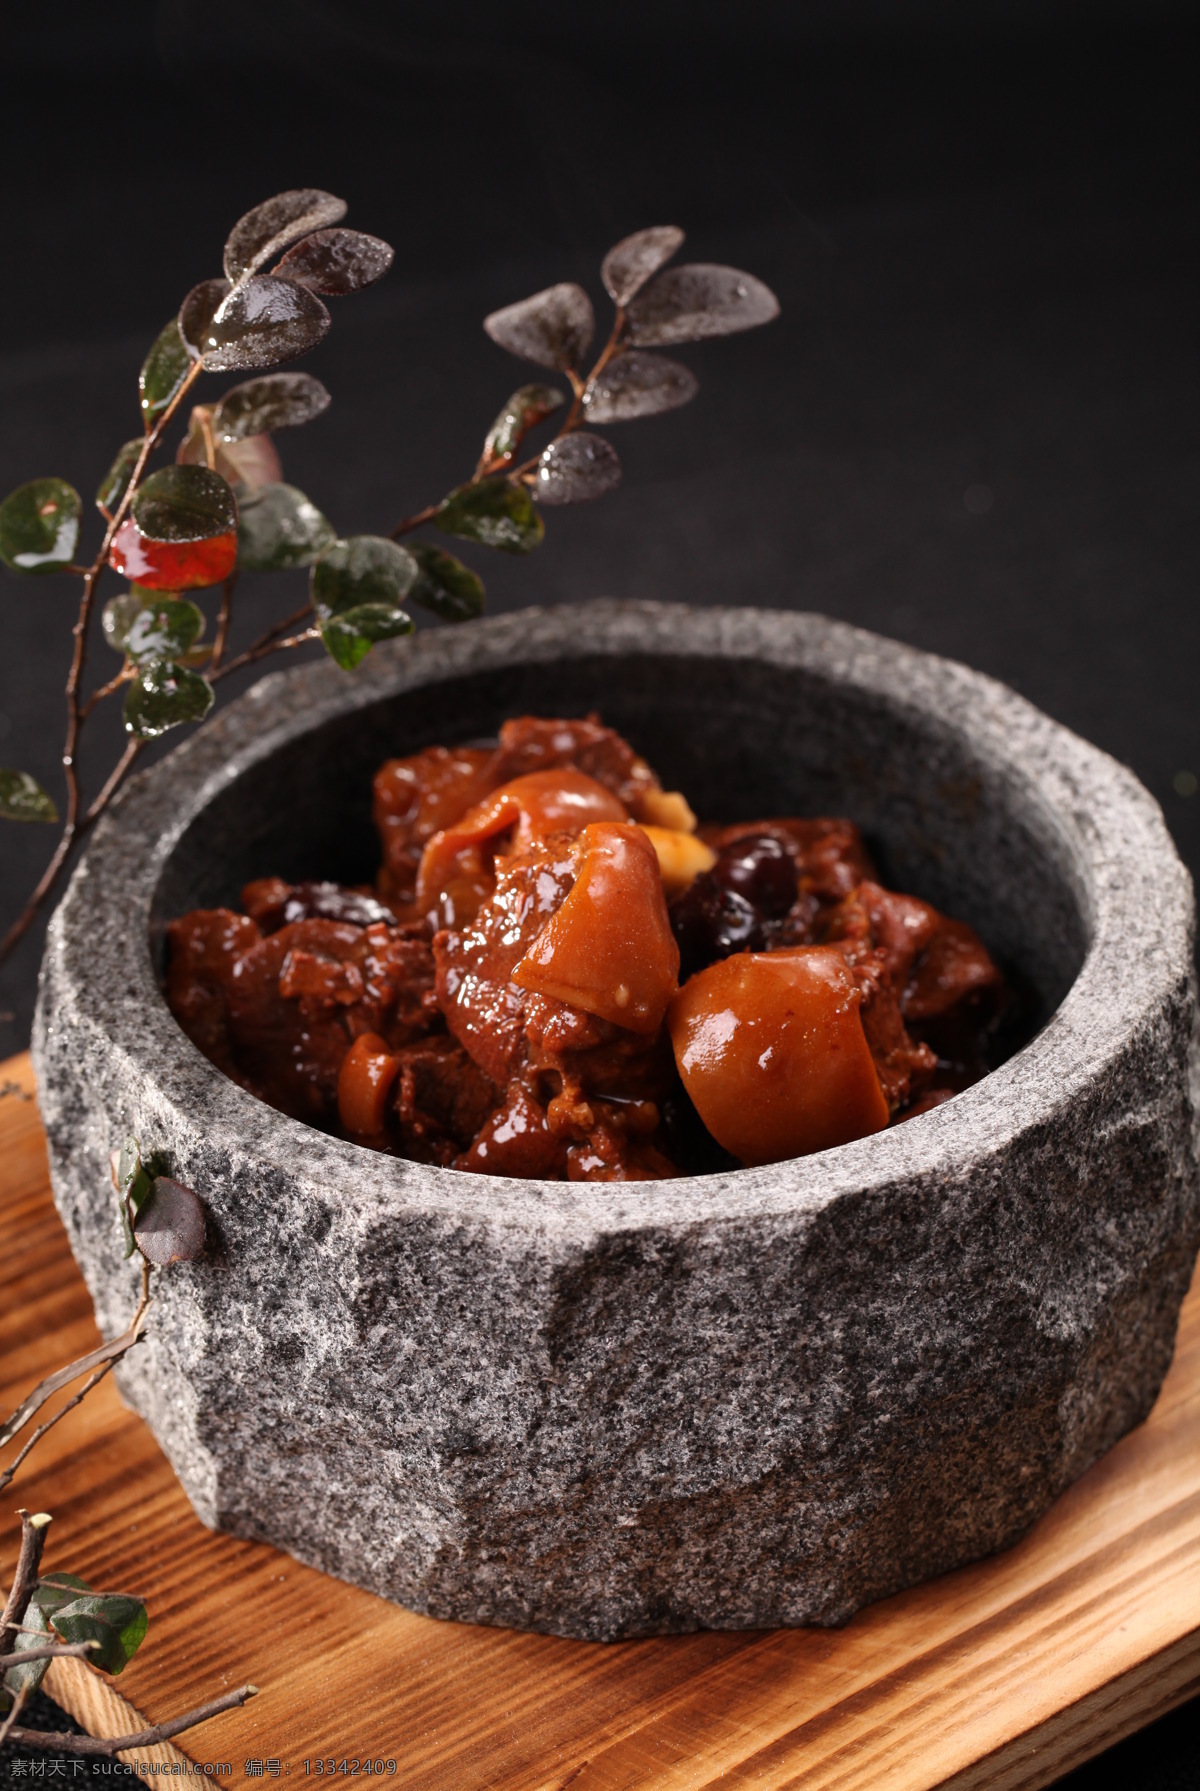 枣香羊肉 羊肉 美食 中餐 传统美食 餐饮美食